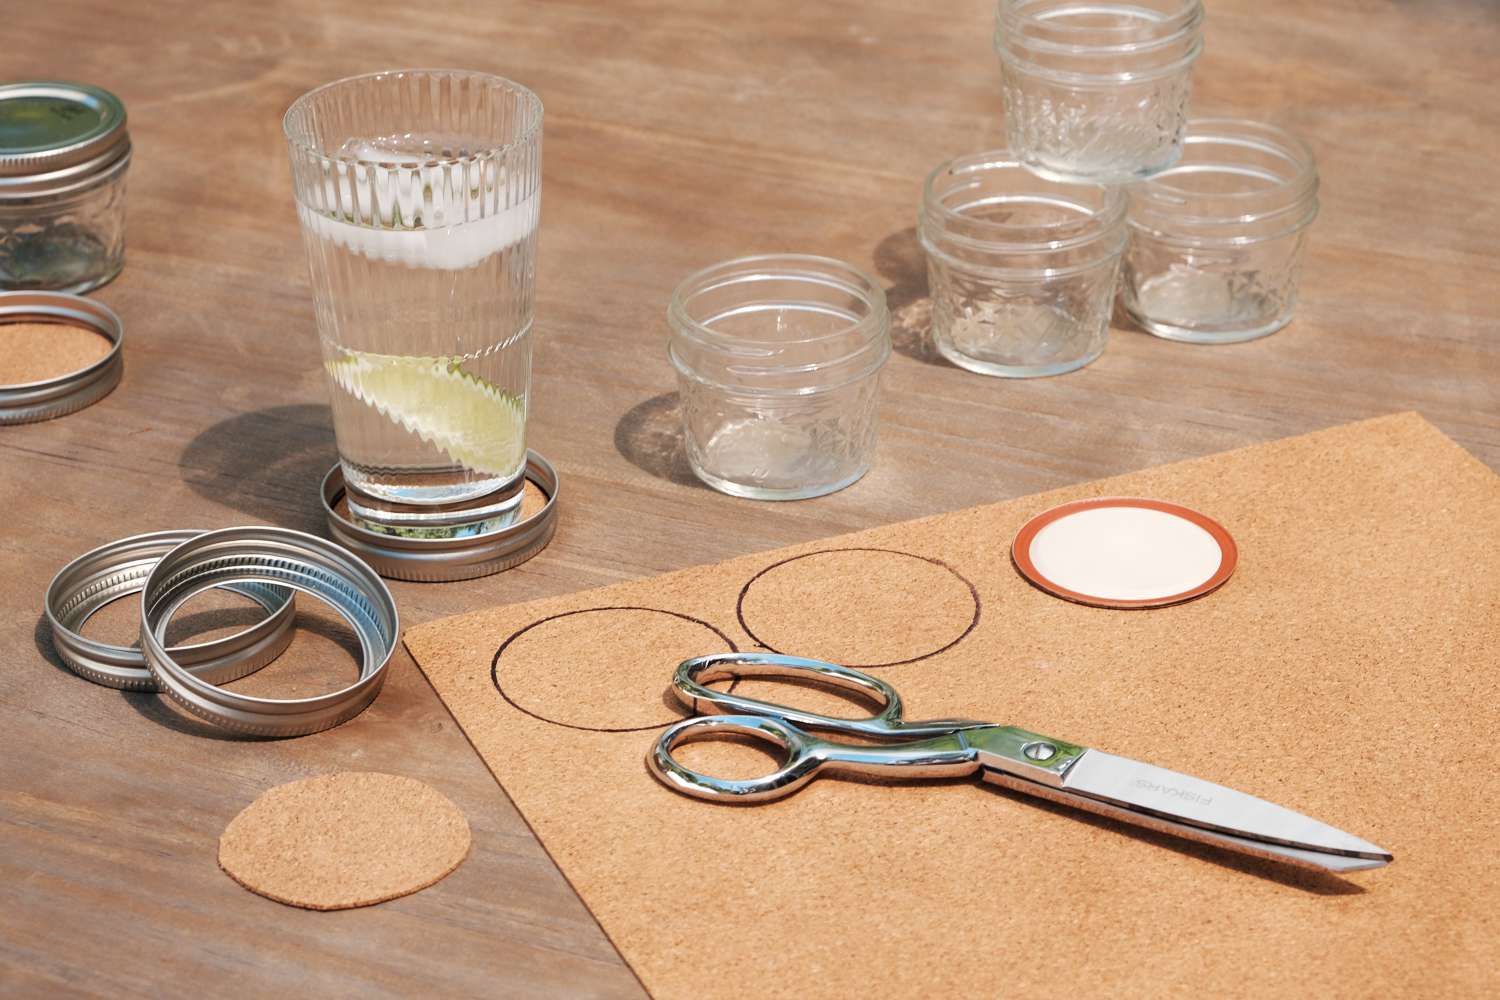 剪刀和软木材料使DIY杯垫与旧罐头盖子